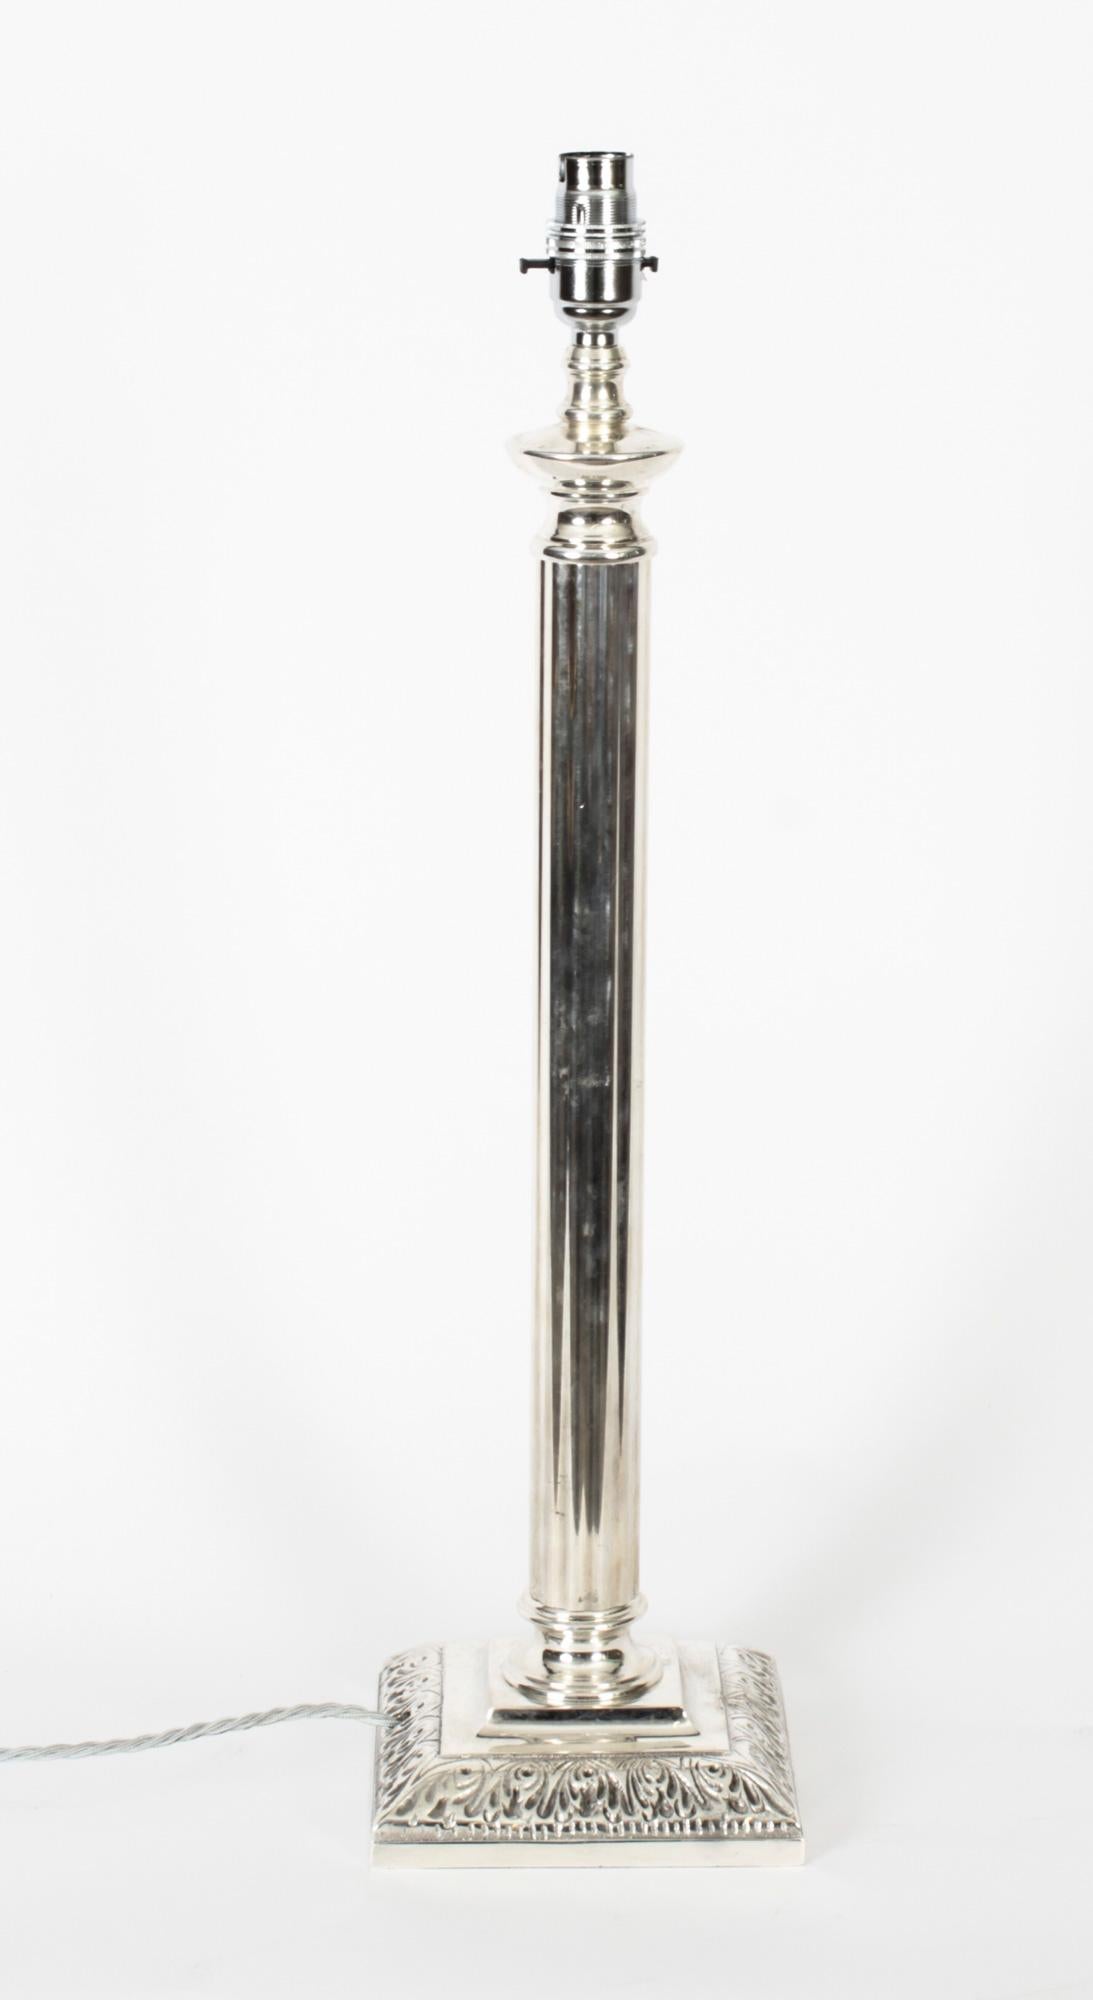 Il s'agit d'une impressionnante lampe de table à colonne dorique victorienne argentée, datant d'environ 1890 et convertie plus tard à l'électricité.
 
Il présente un chapiteau dorique classique décoré d'une tige cylindrique cannelée sur une base